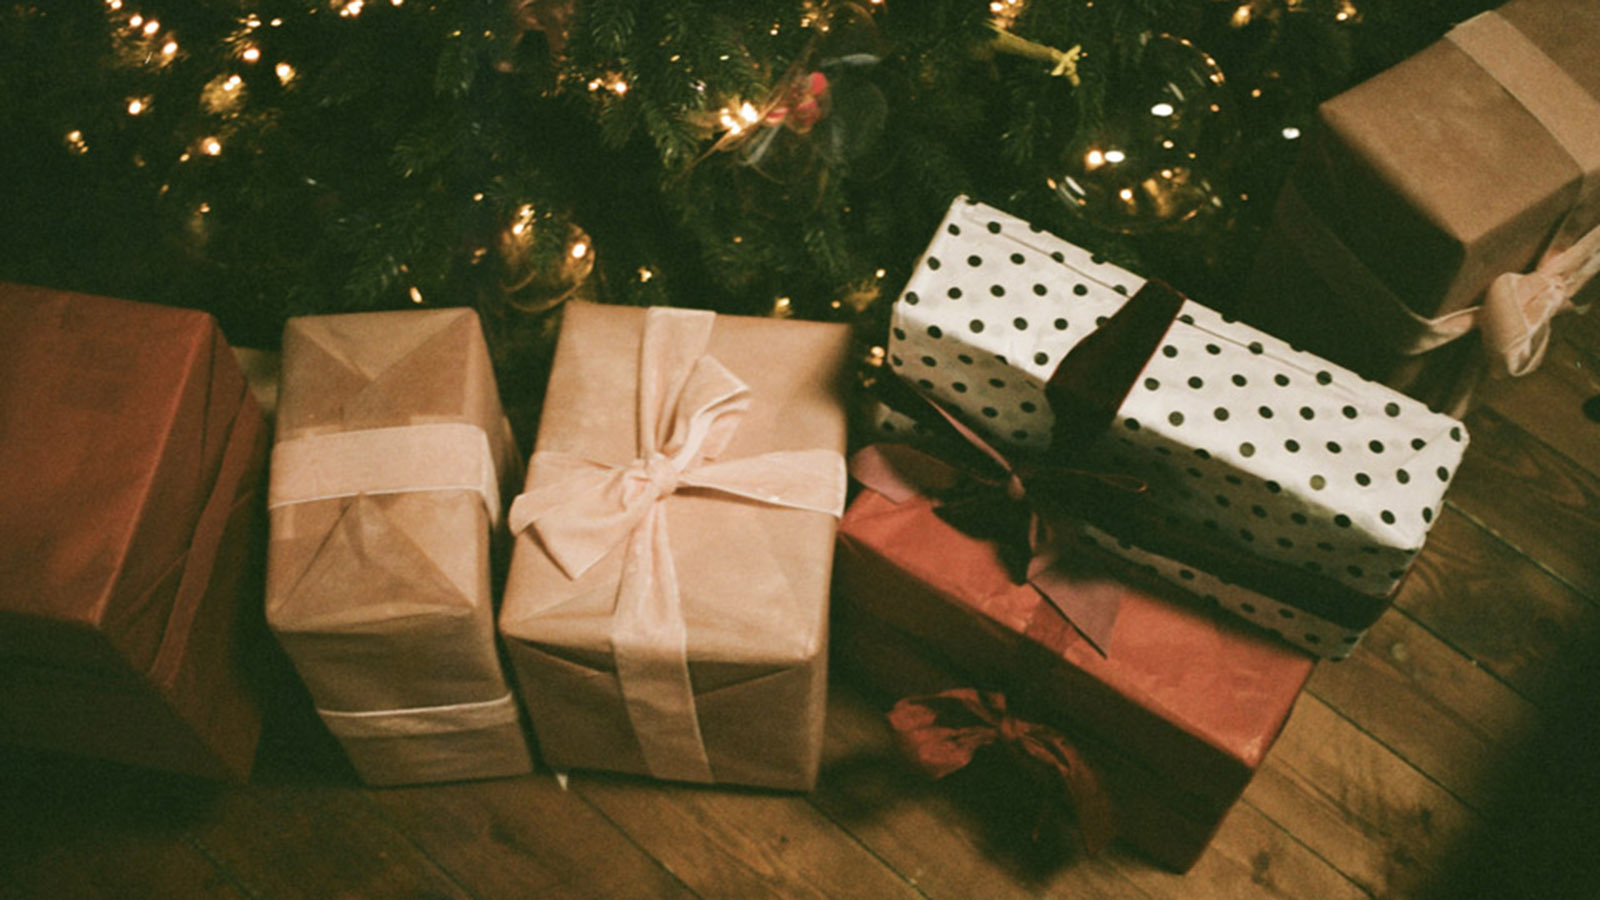 How to Geschenke verpacken